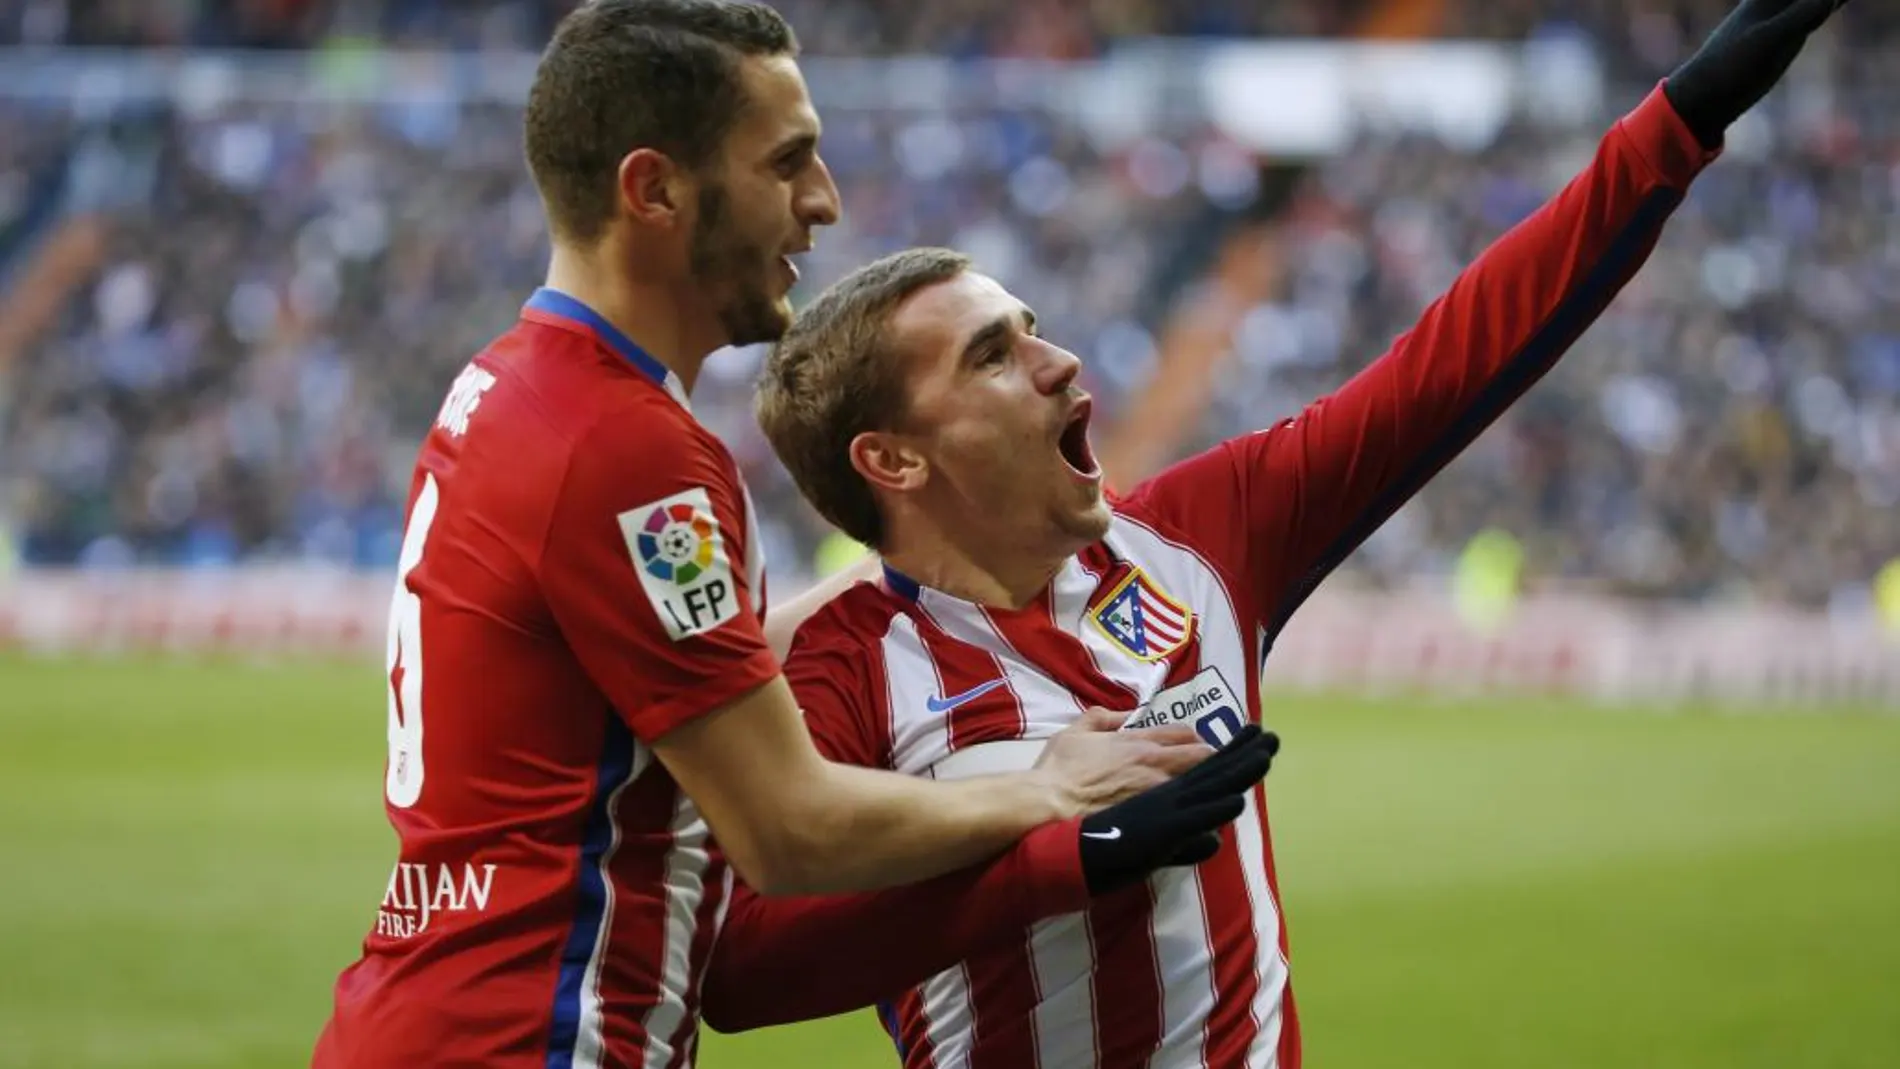 El delantero del Atlético de Madrid Antoine Griezmann (d) celebra con su compañero, el centrocampista Koke Resurrección